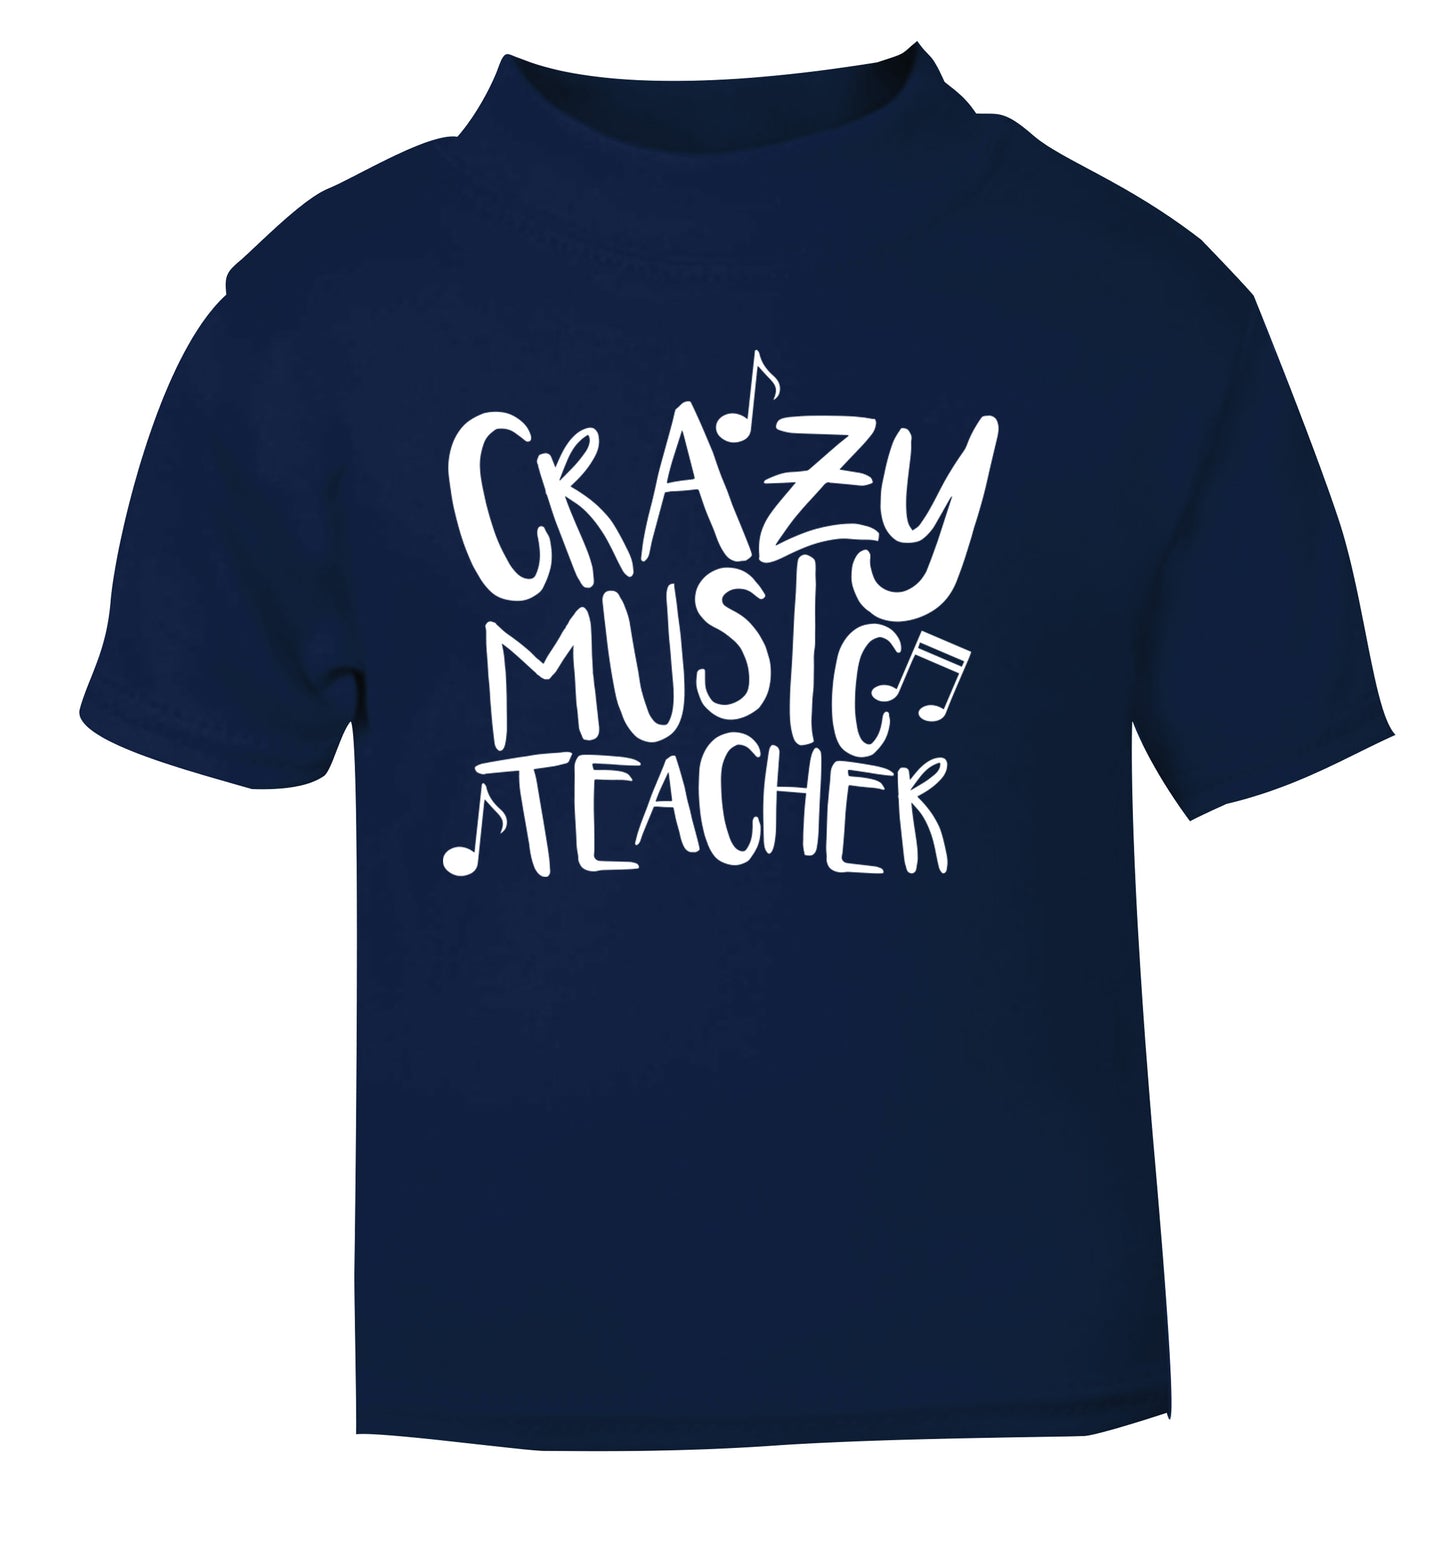 Crazy music teacher navy Baby Toddler Tshirt 2 Years